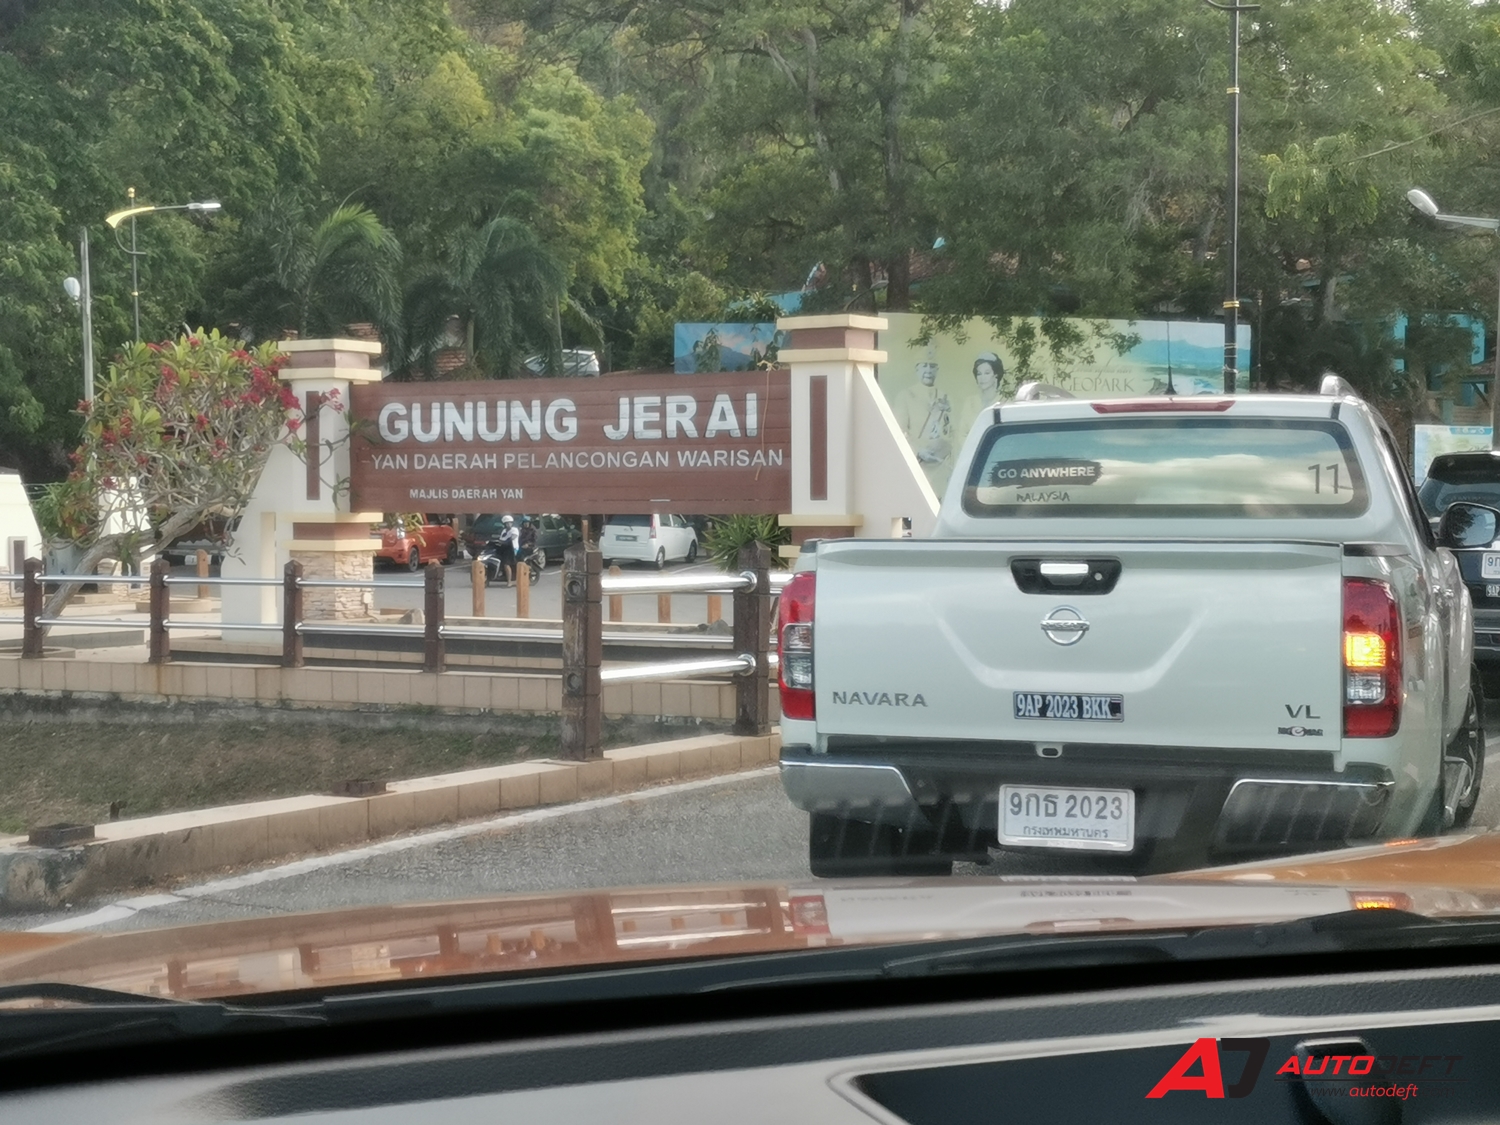 Nissan Go Anywhere Malaysia